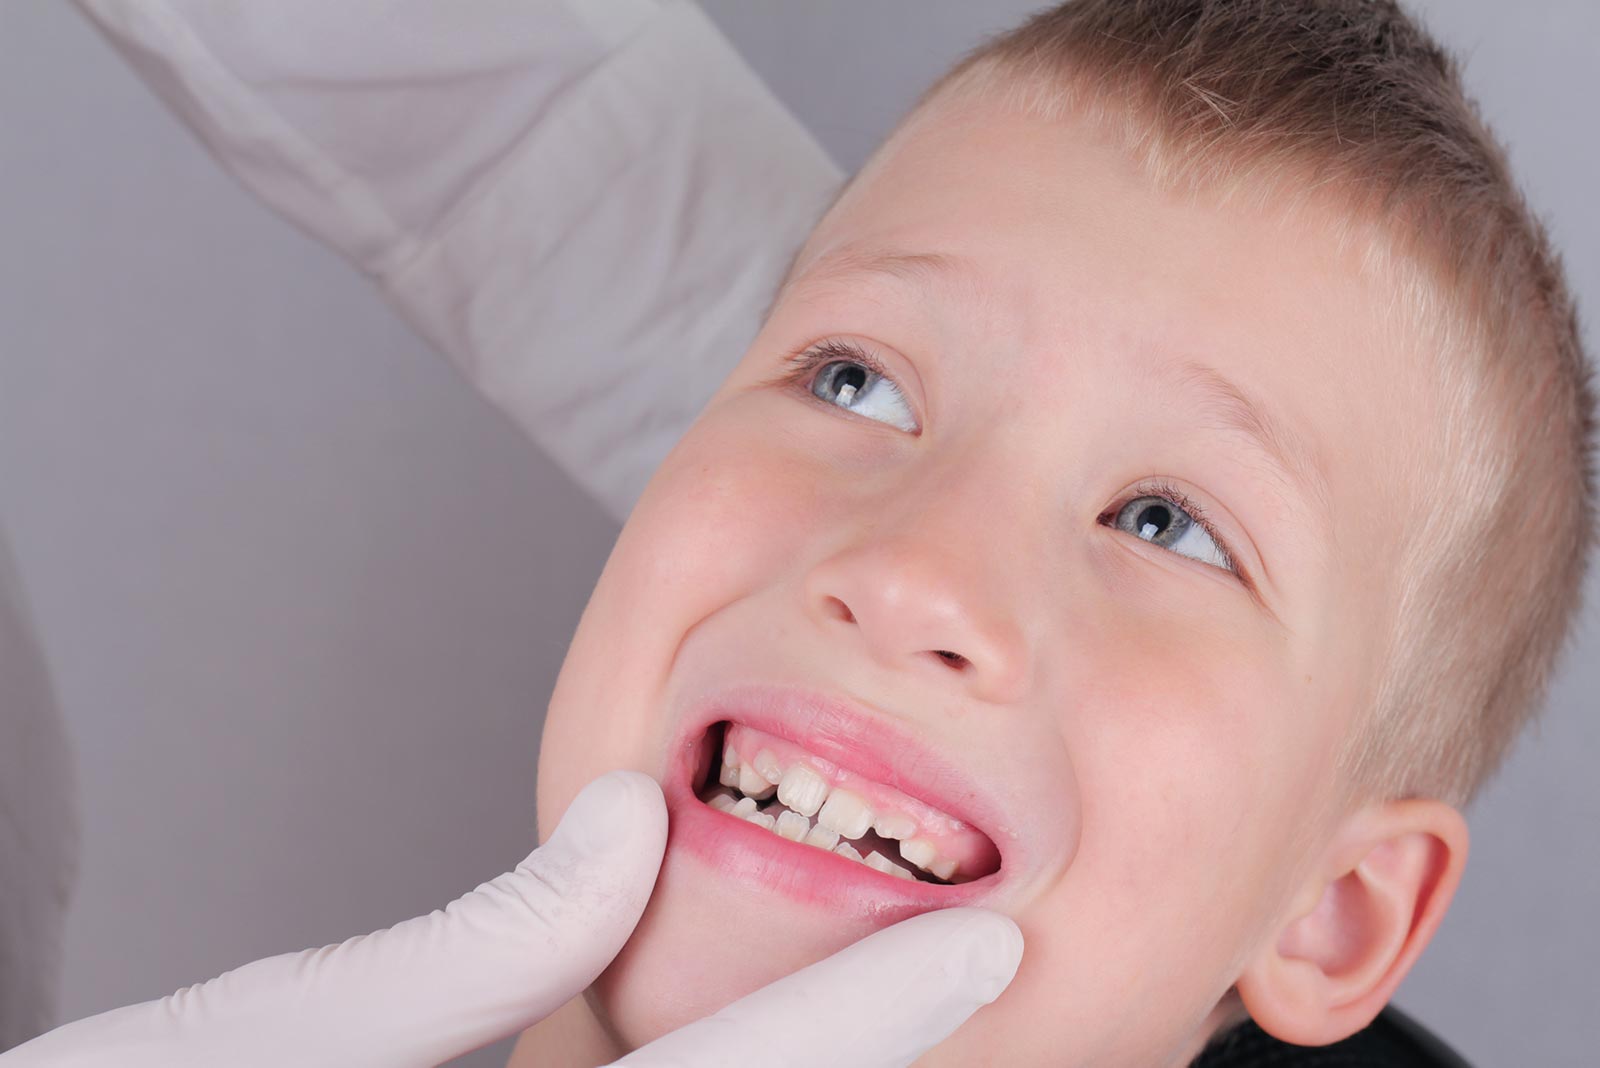 Отсутствуют коренные зубы у детей